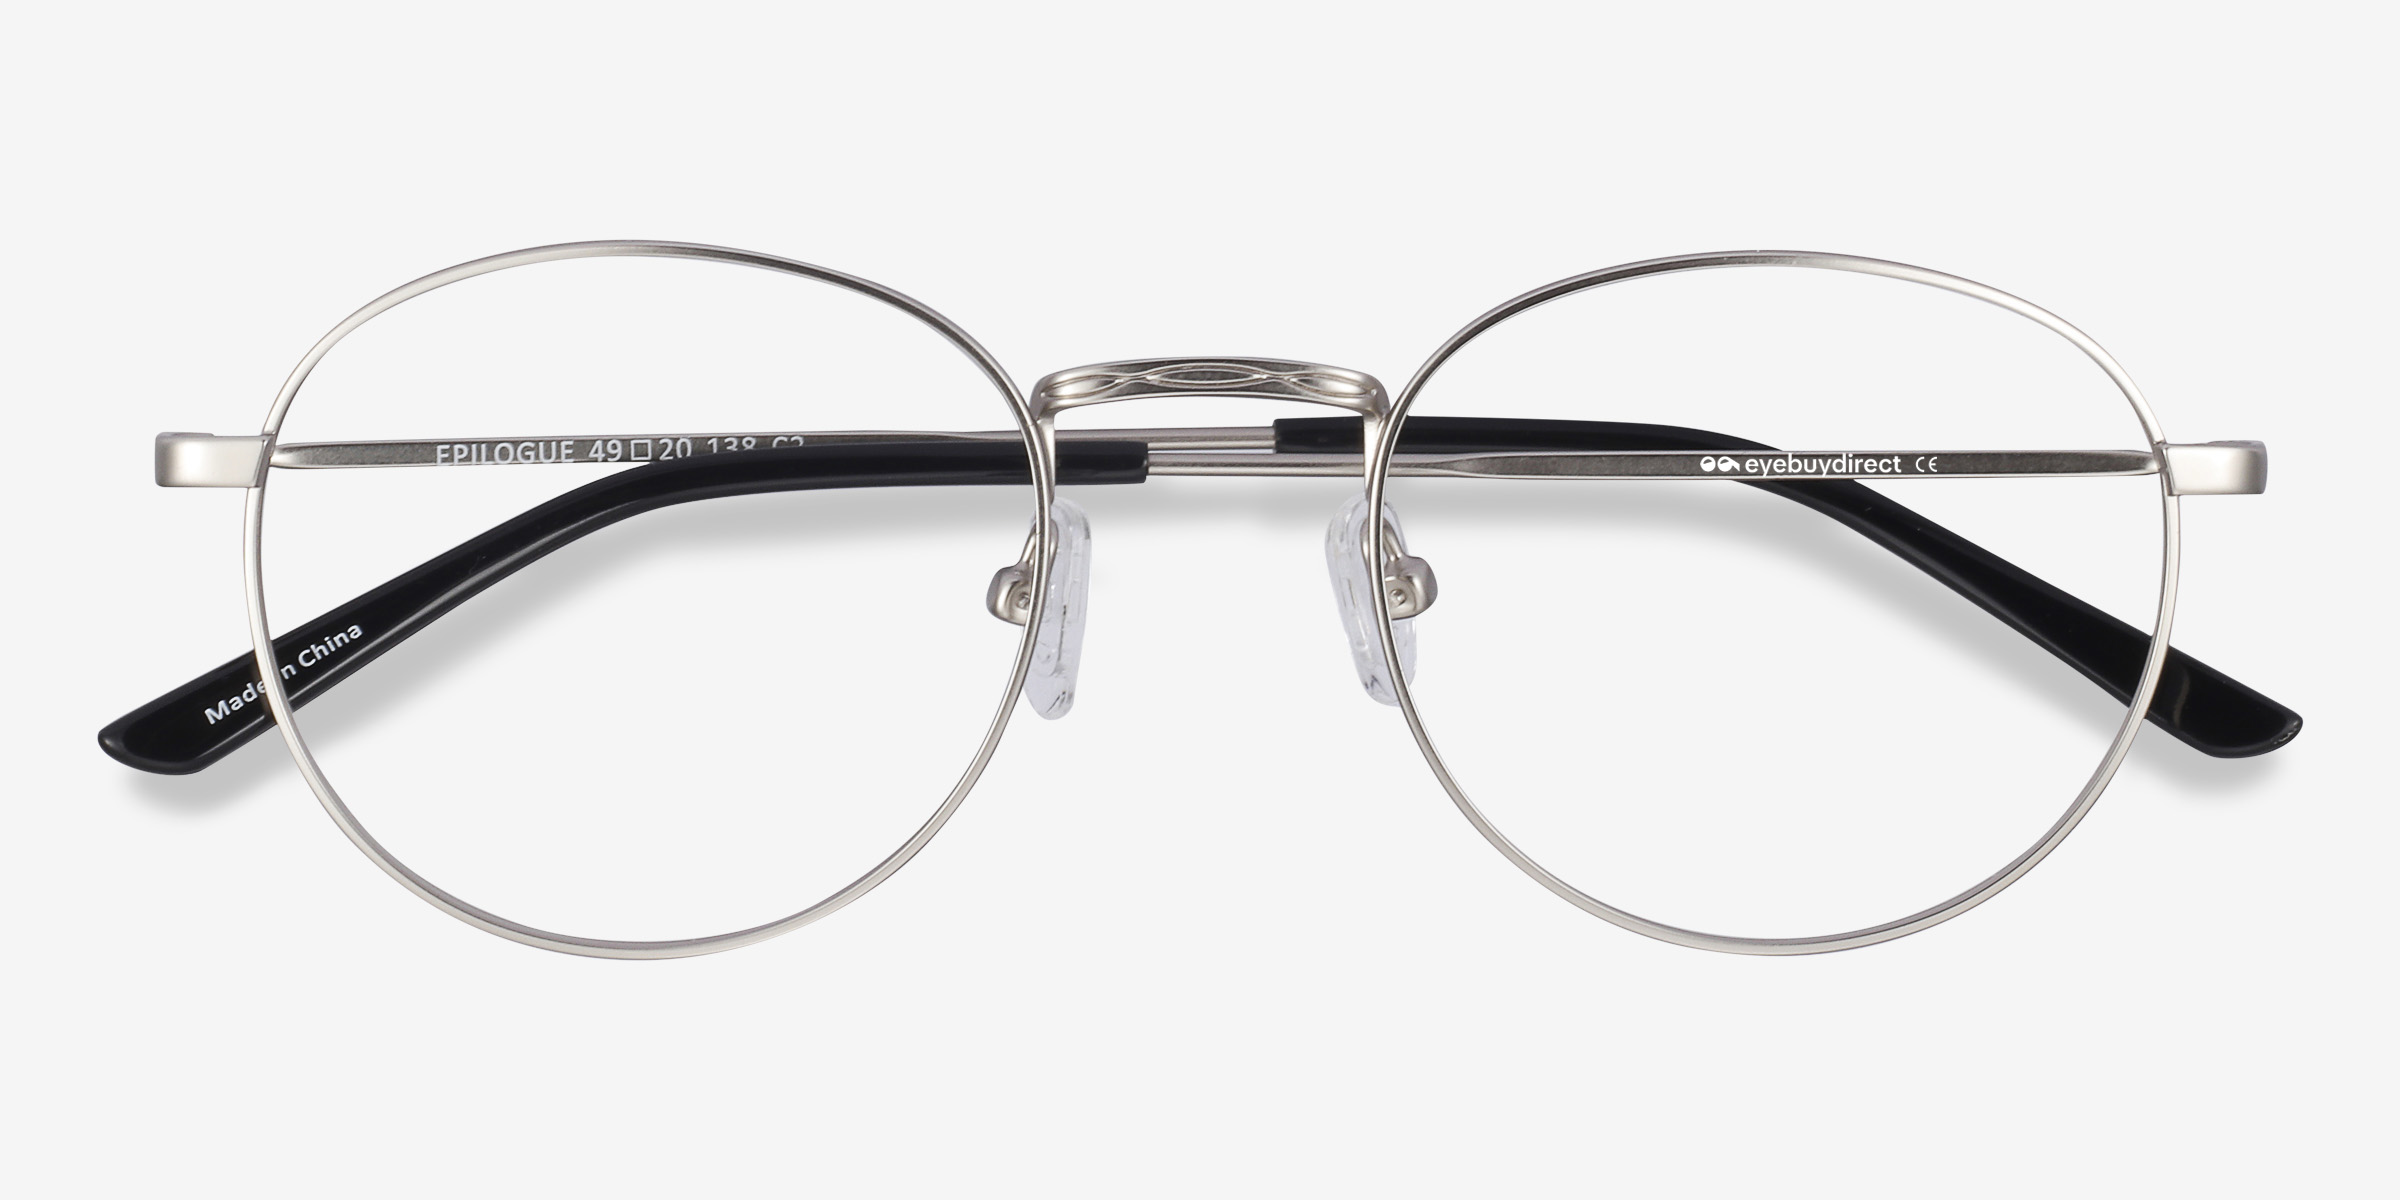 Epilogue Oval Silver Full Rim Eyeglasses Eyebuydirect